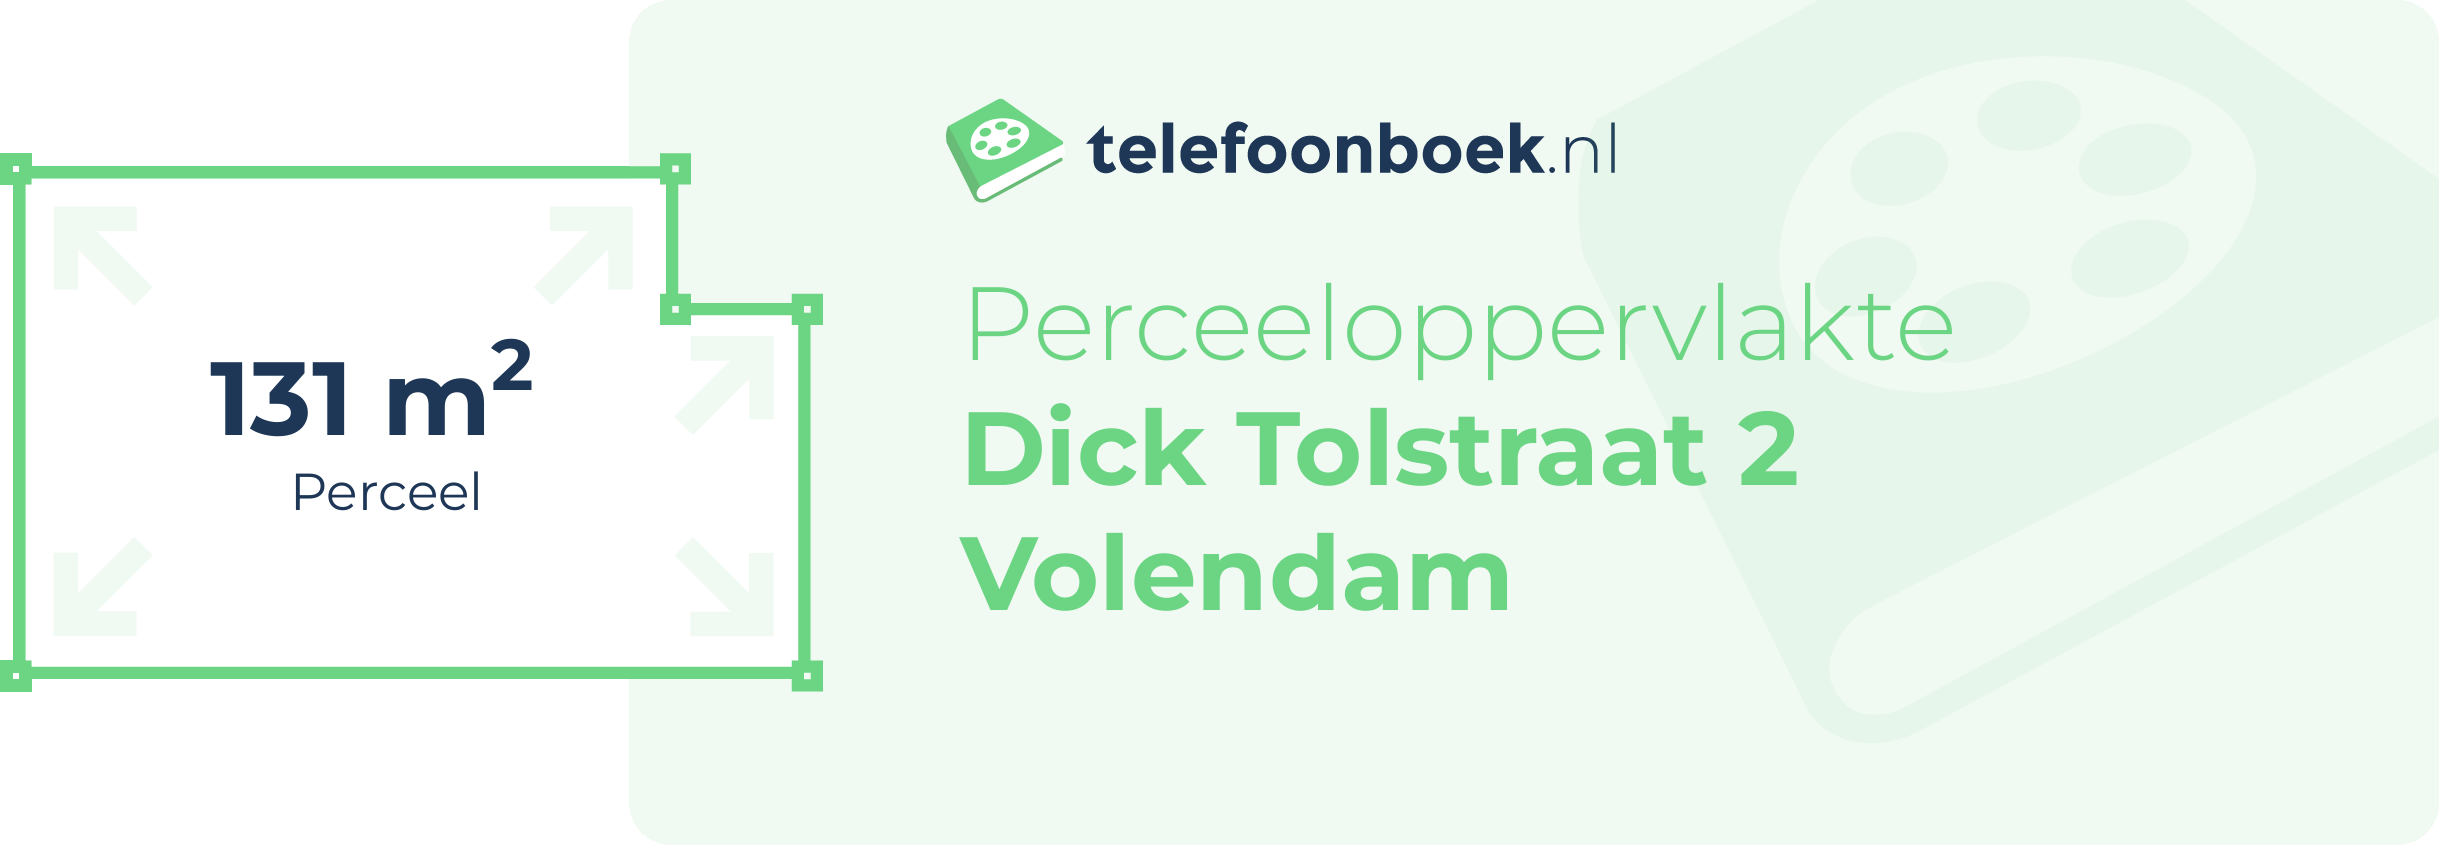 Perceeloppervlakte Dick Tolstraat 2 Volendam